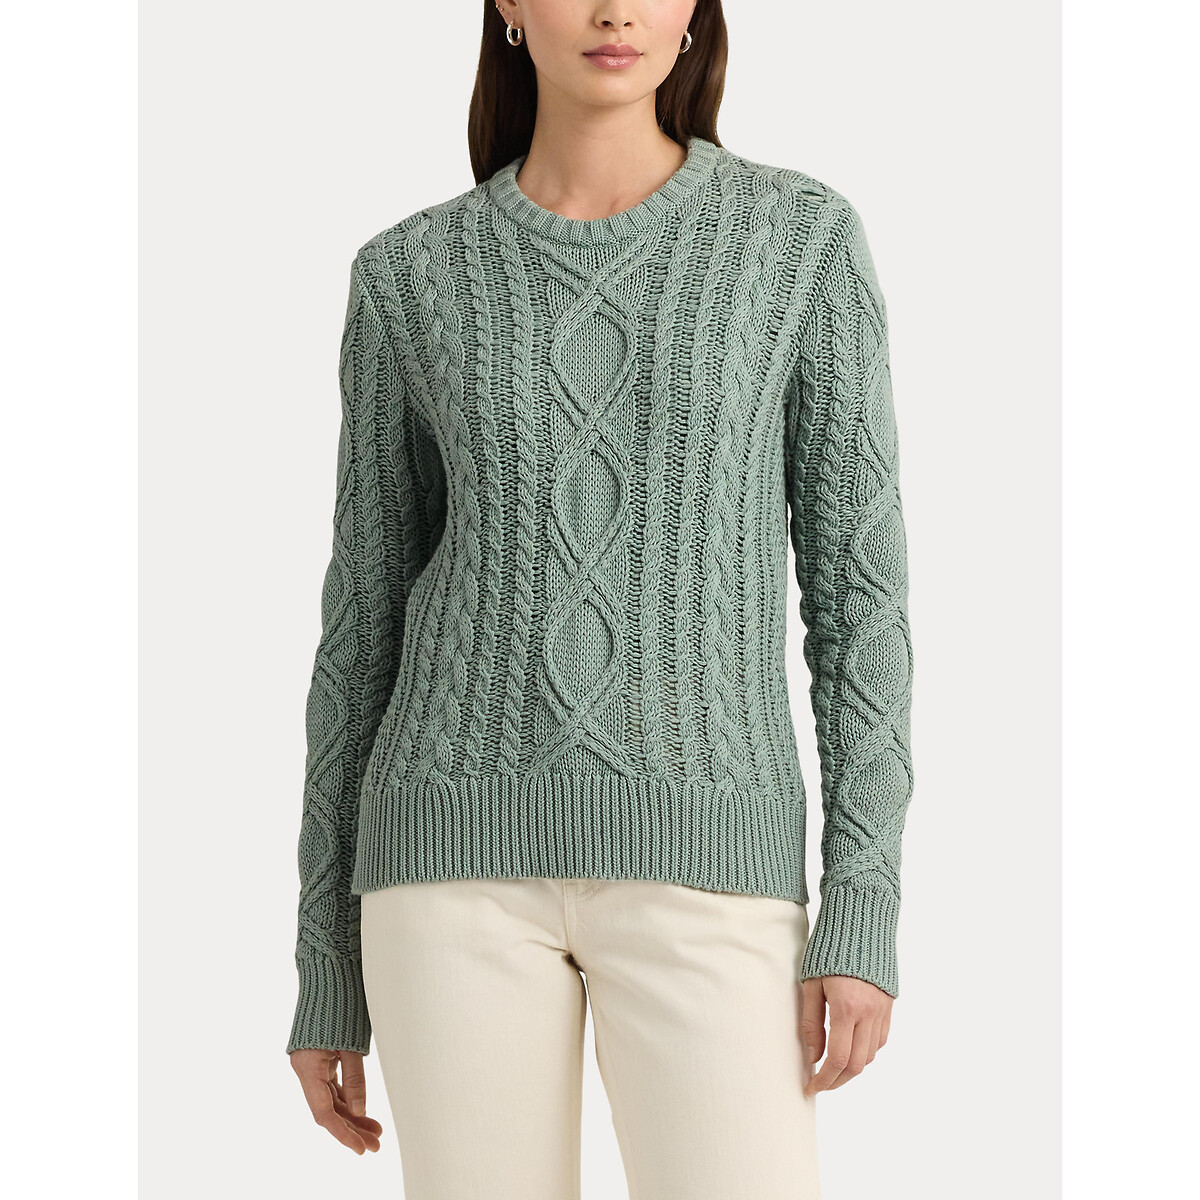 Пуловер с витым узором и круглым вырезом из хлопкового трикотажа HILVAITE XL зеленый пуловер с круглым вырезом из трикотажа с узором косы xl бежевый